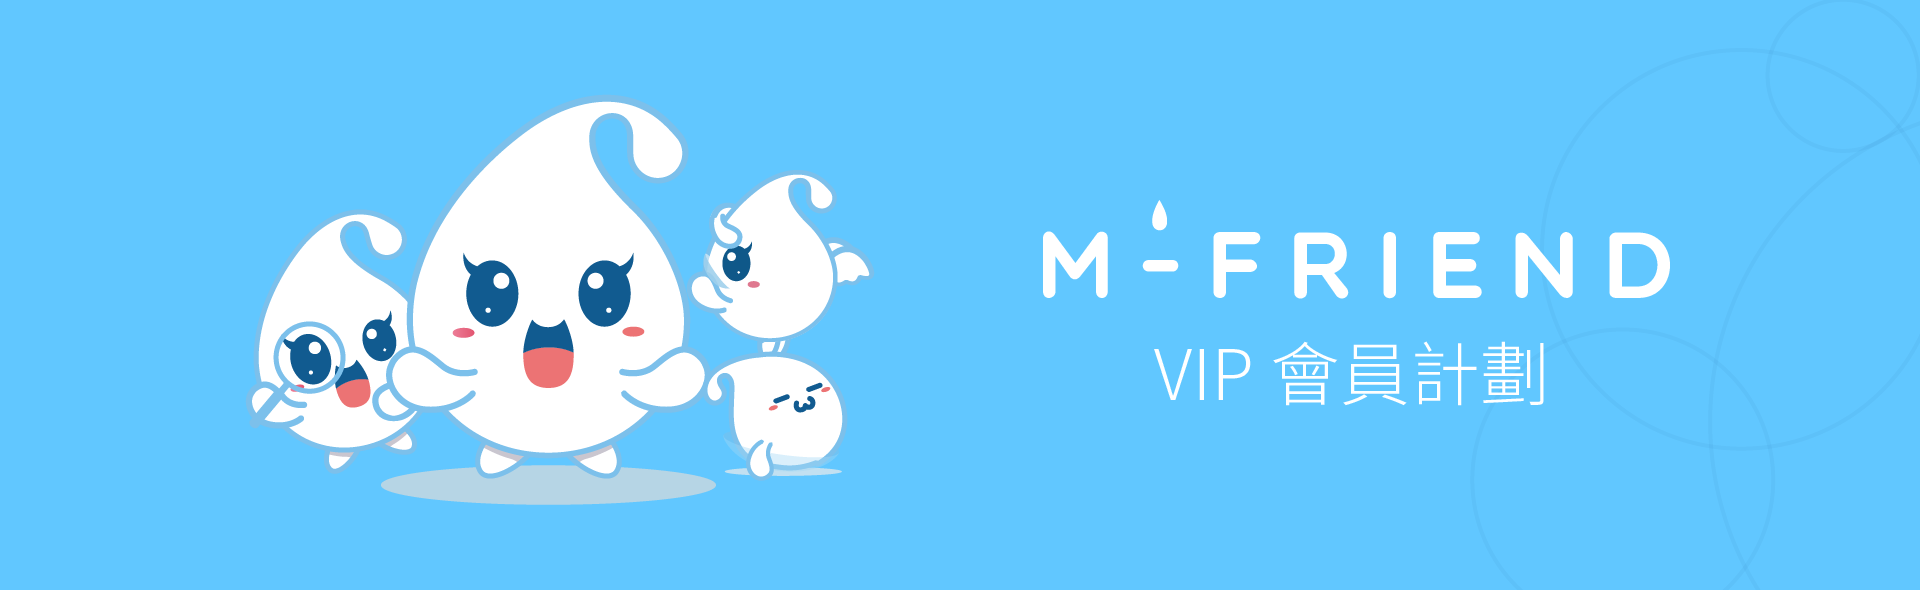 MIZULENS M-FRIEND VIP會員計畫